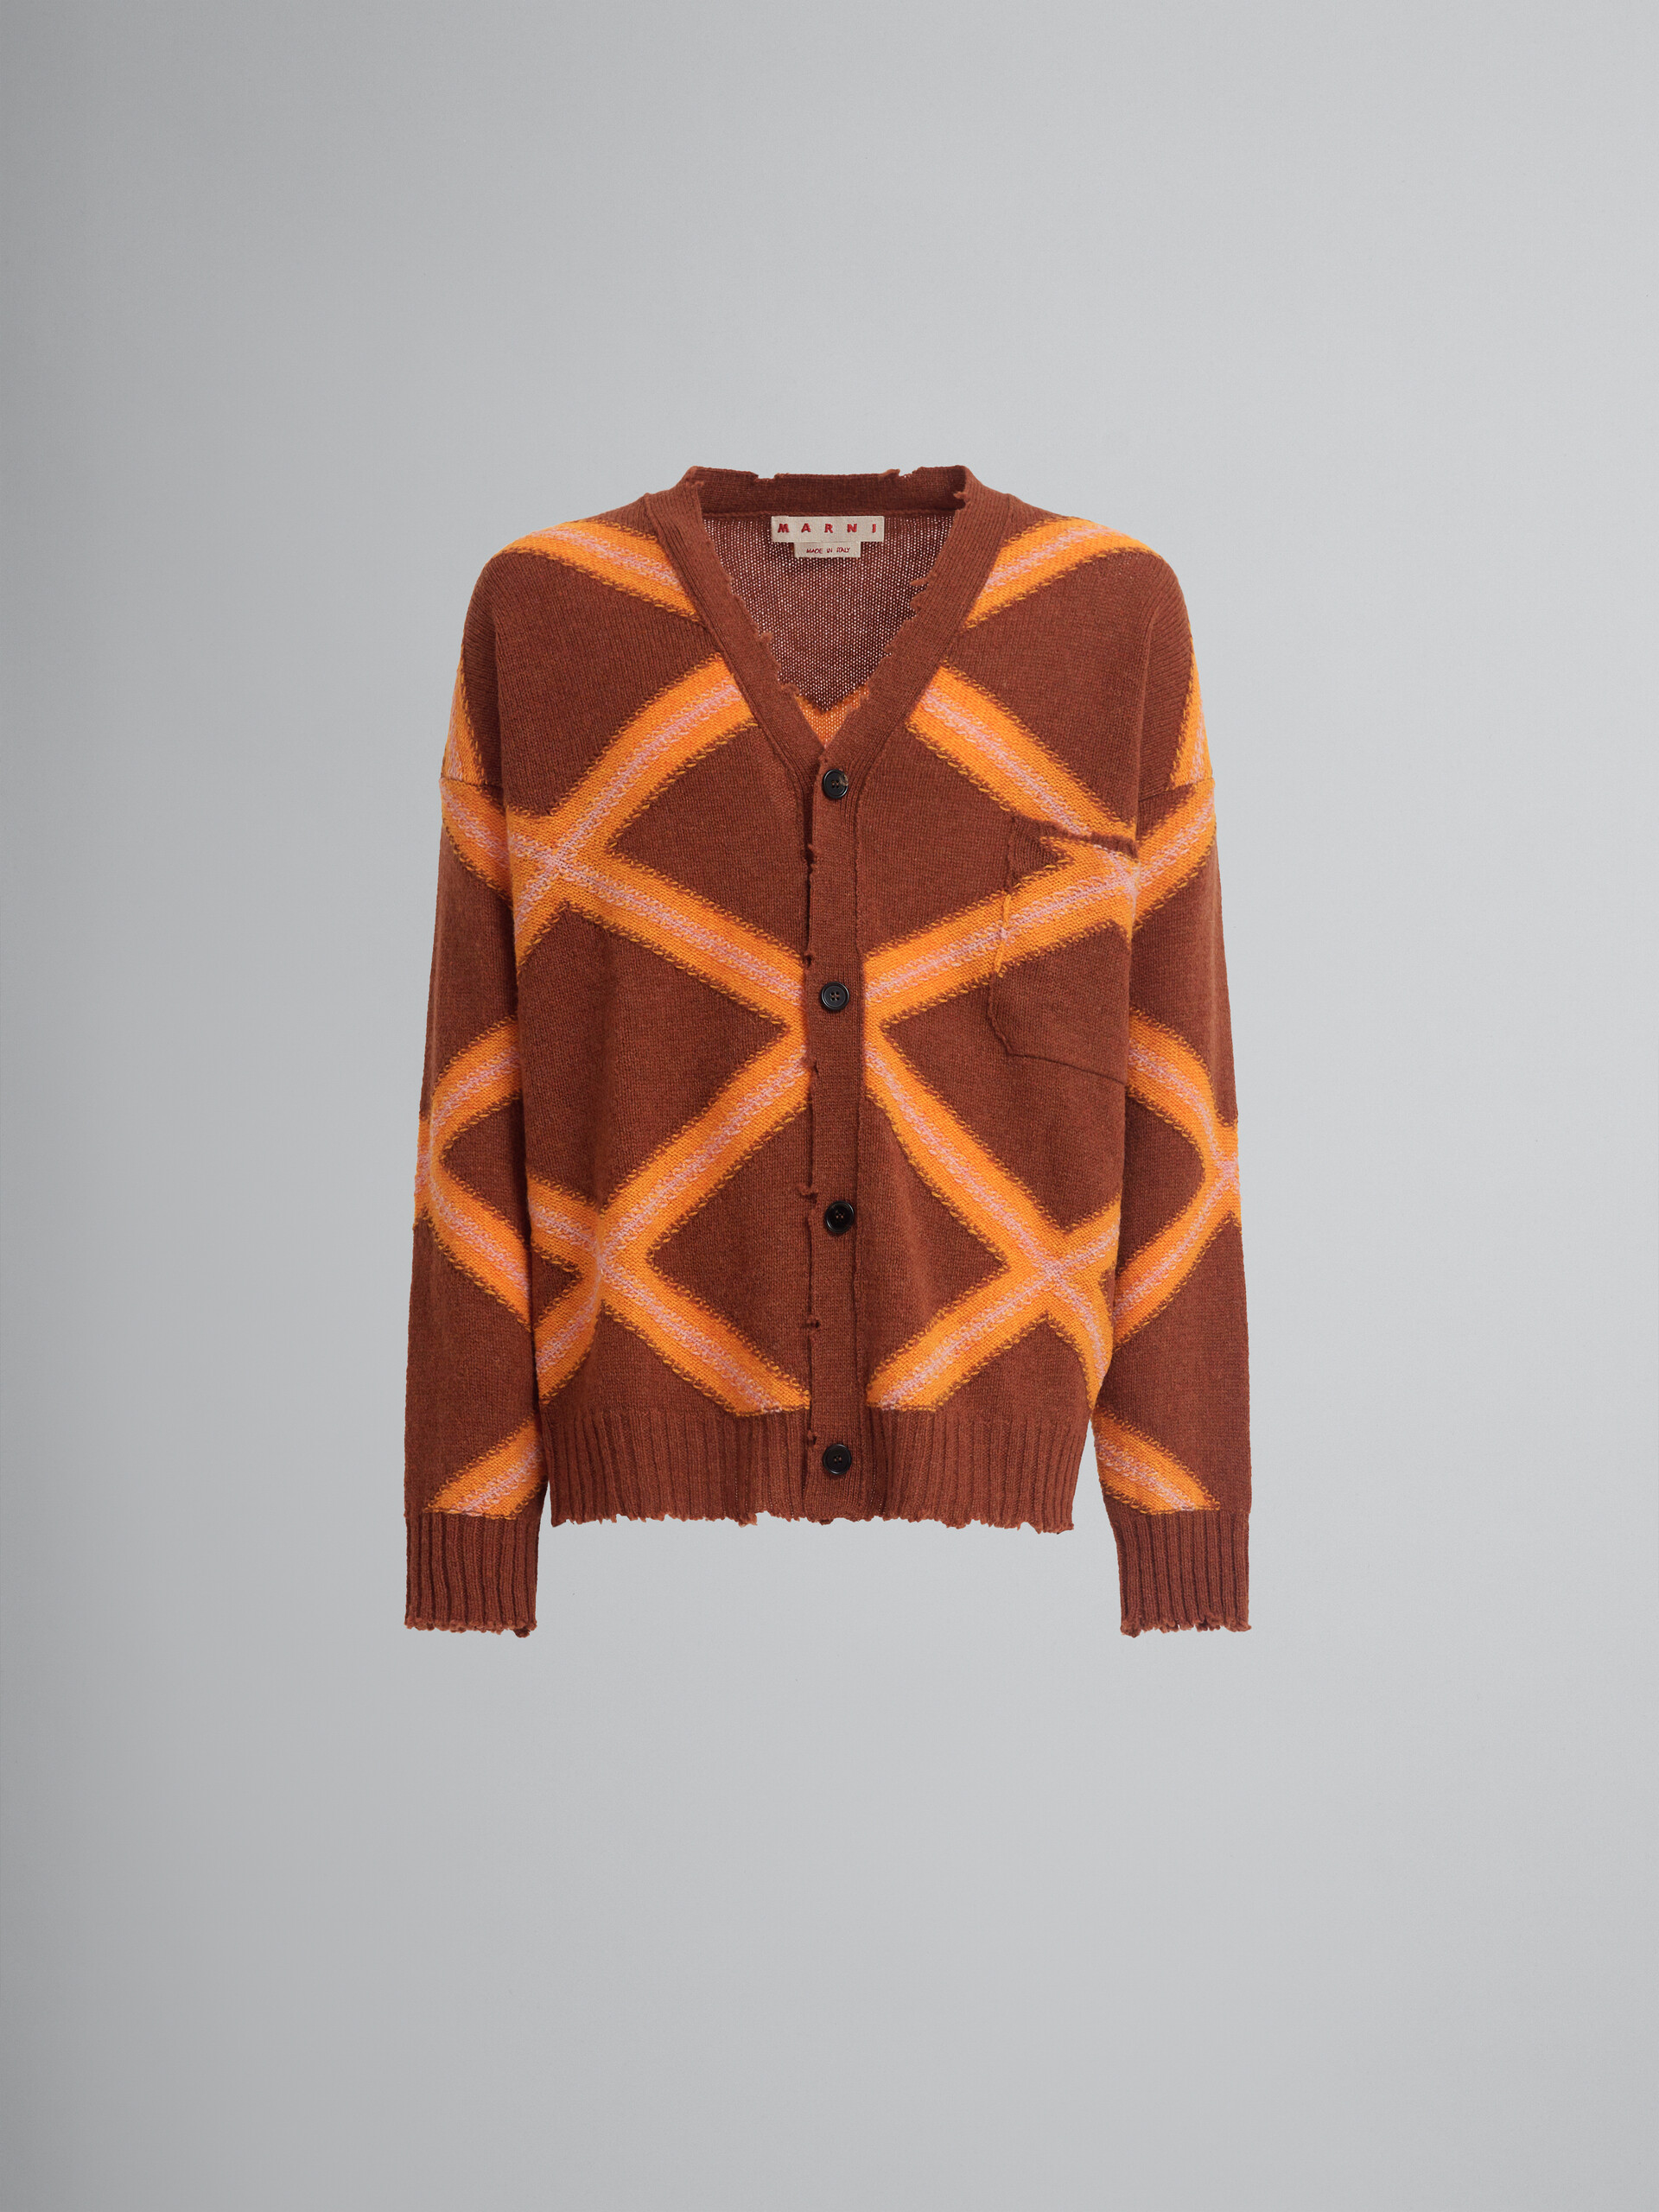 Cárdigan marrón de lana quebrada con motivo de rombos - jerseys - Image 1